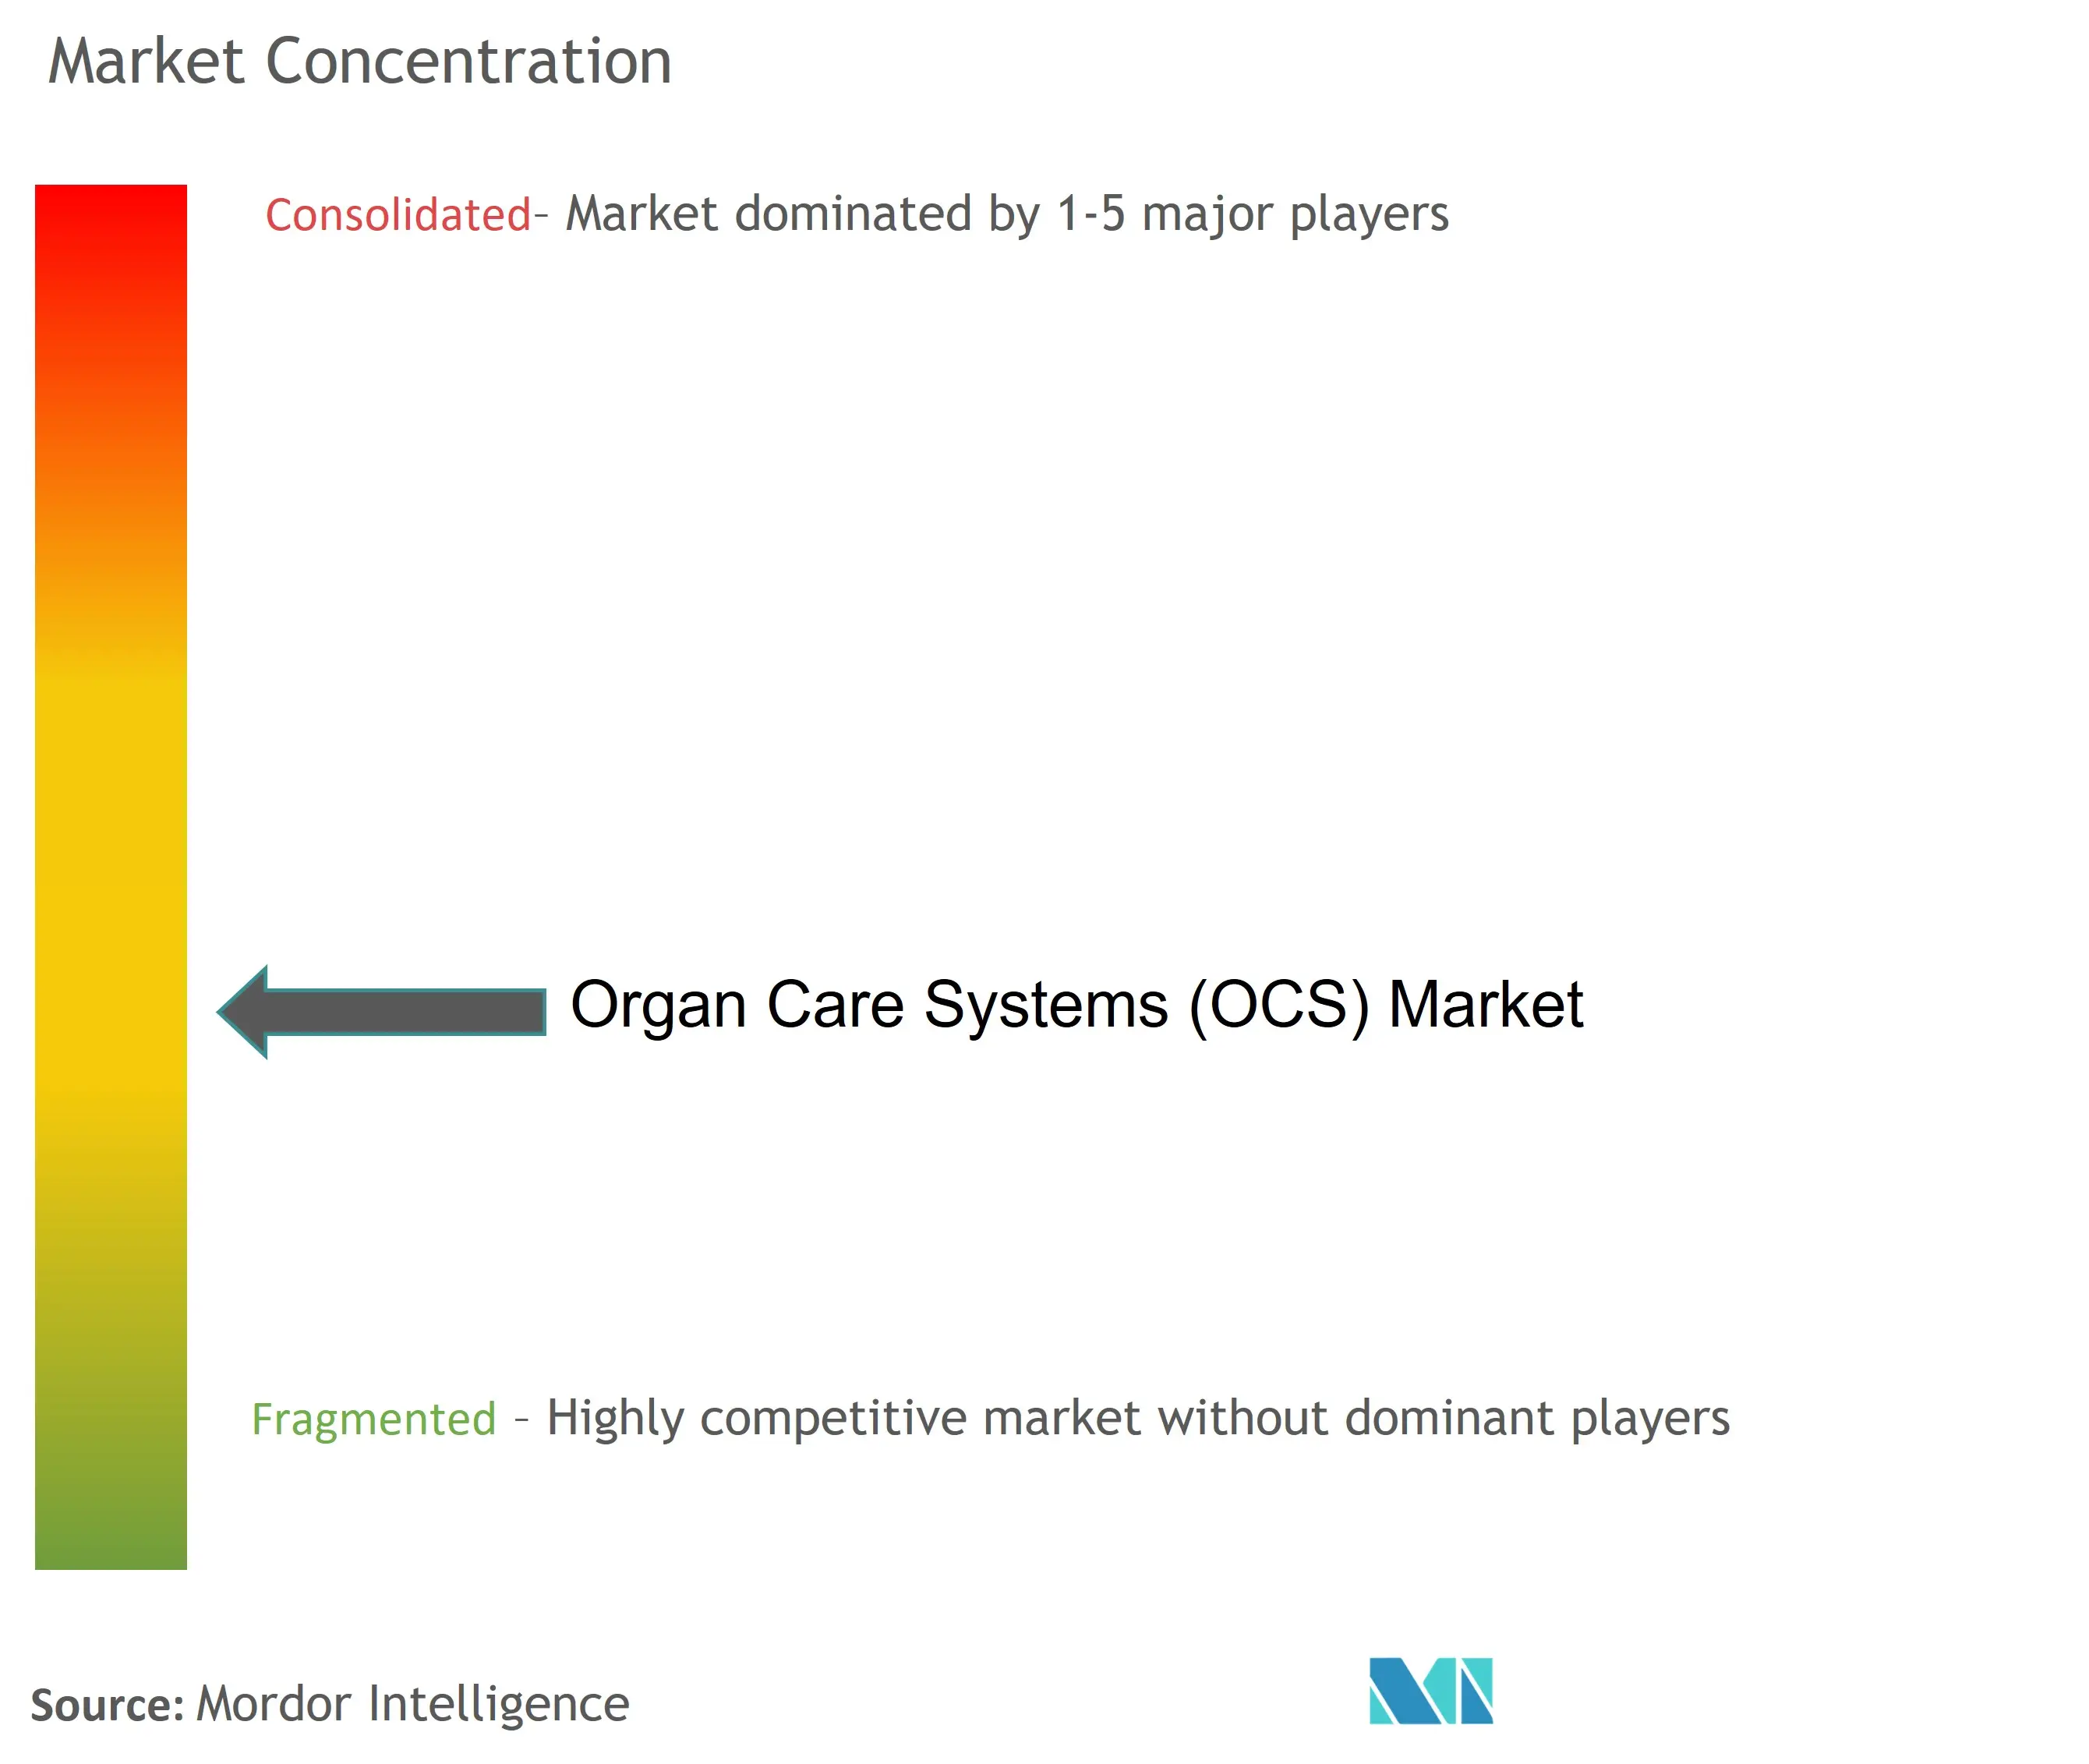 臓器ケアシステム(OCS)市場の集中